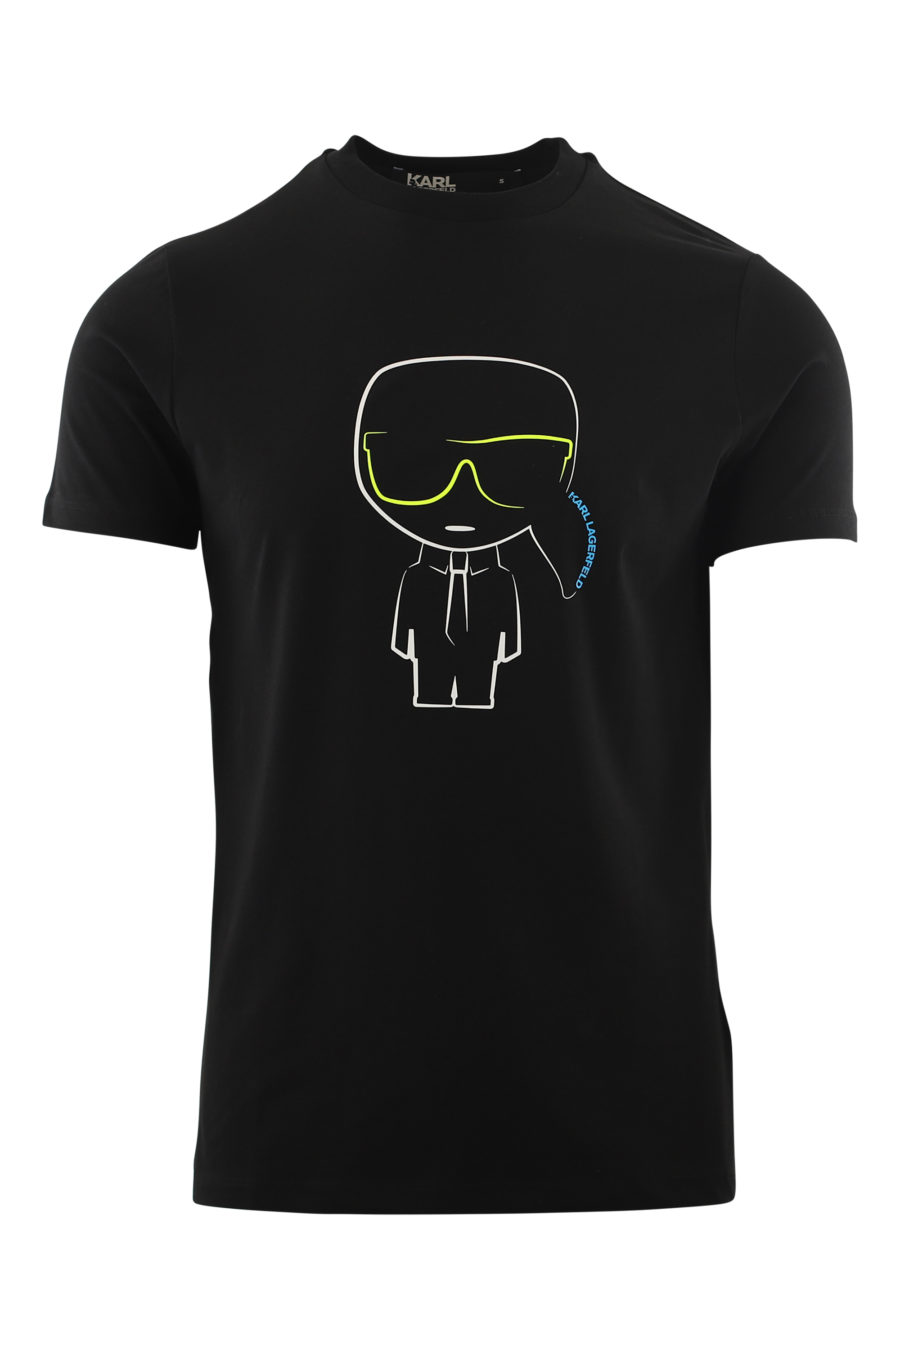 Camiseta negra con logo en multicolores - IMG 6543